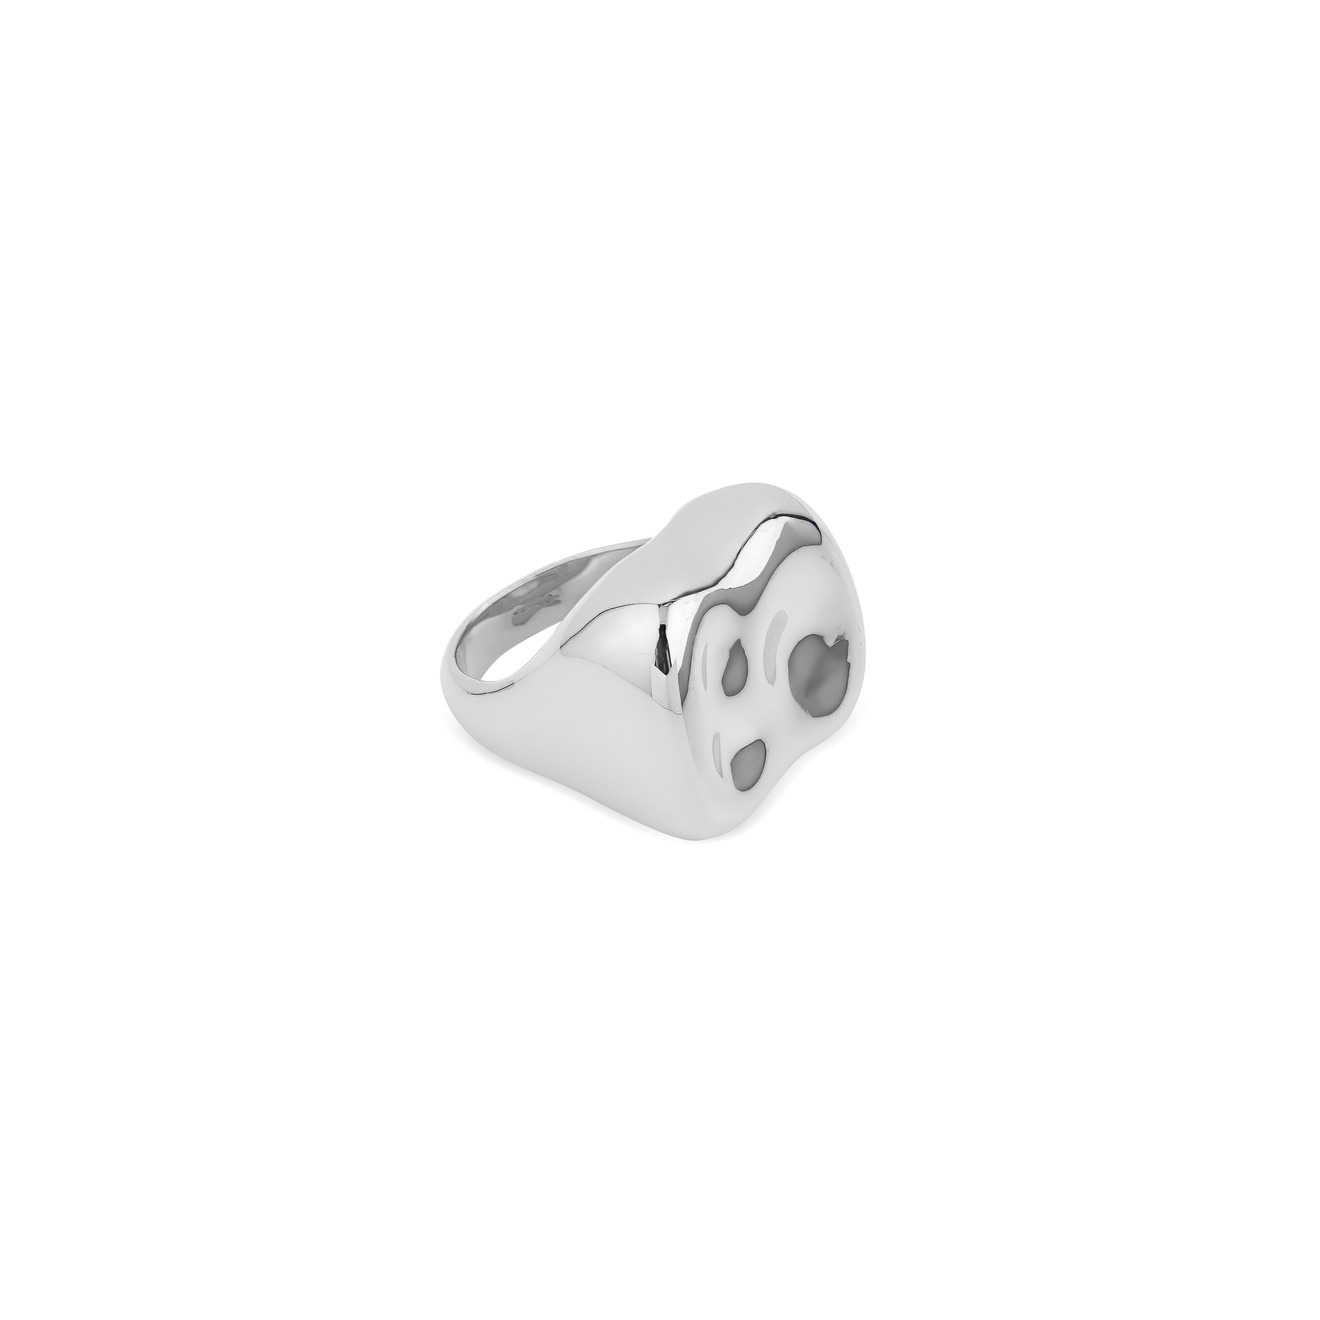 Free Form Jewelry Серебристое мятое кольцо-печатка isabel marant незамкнутое серебристое кольцо печатка с розовым камнем